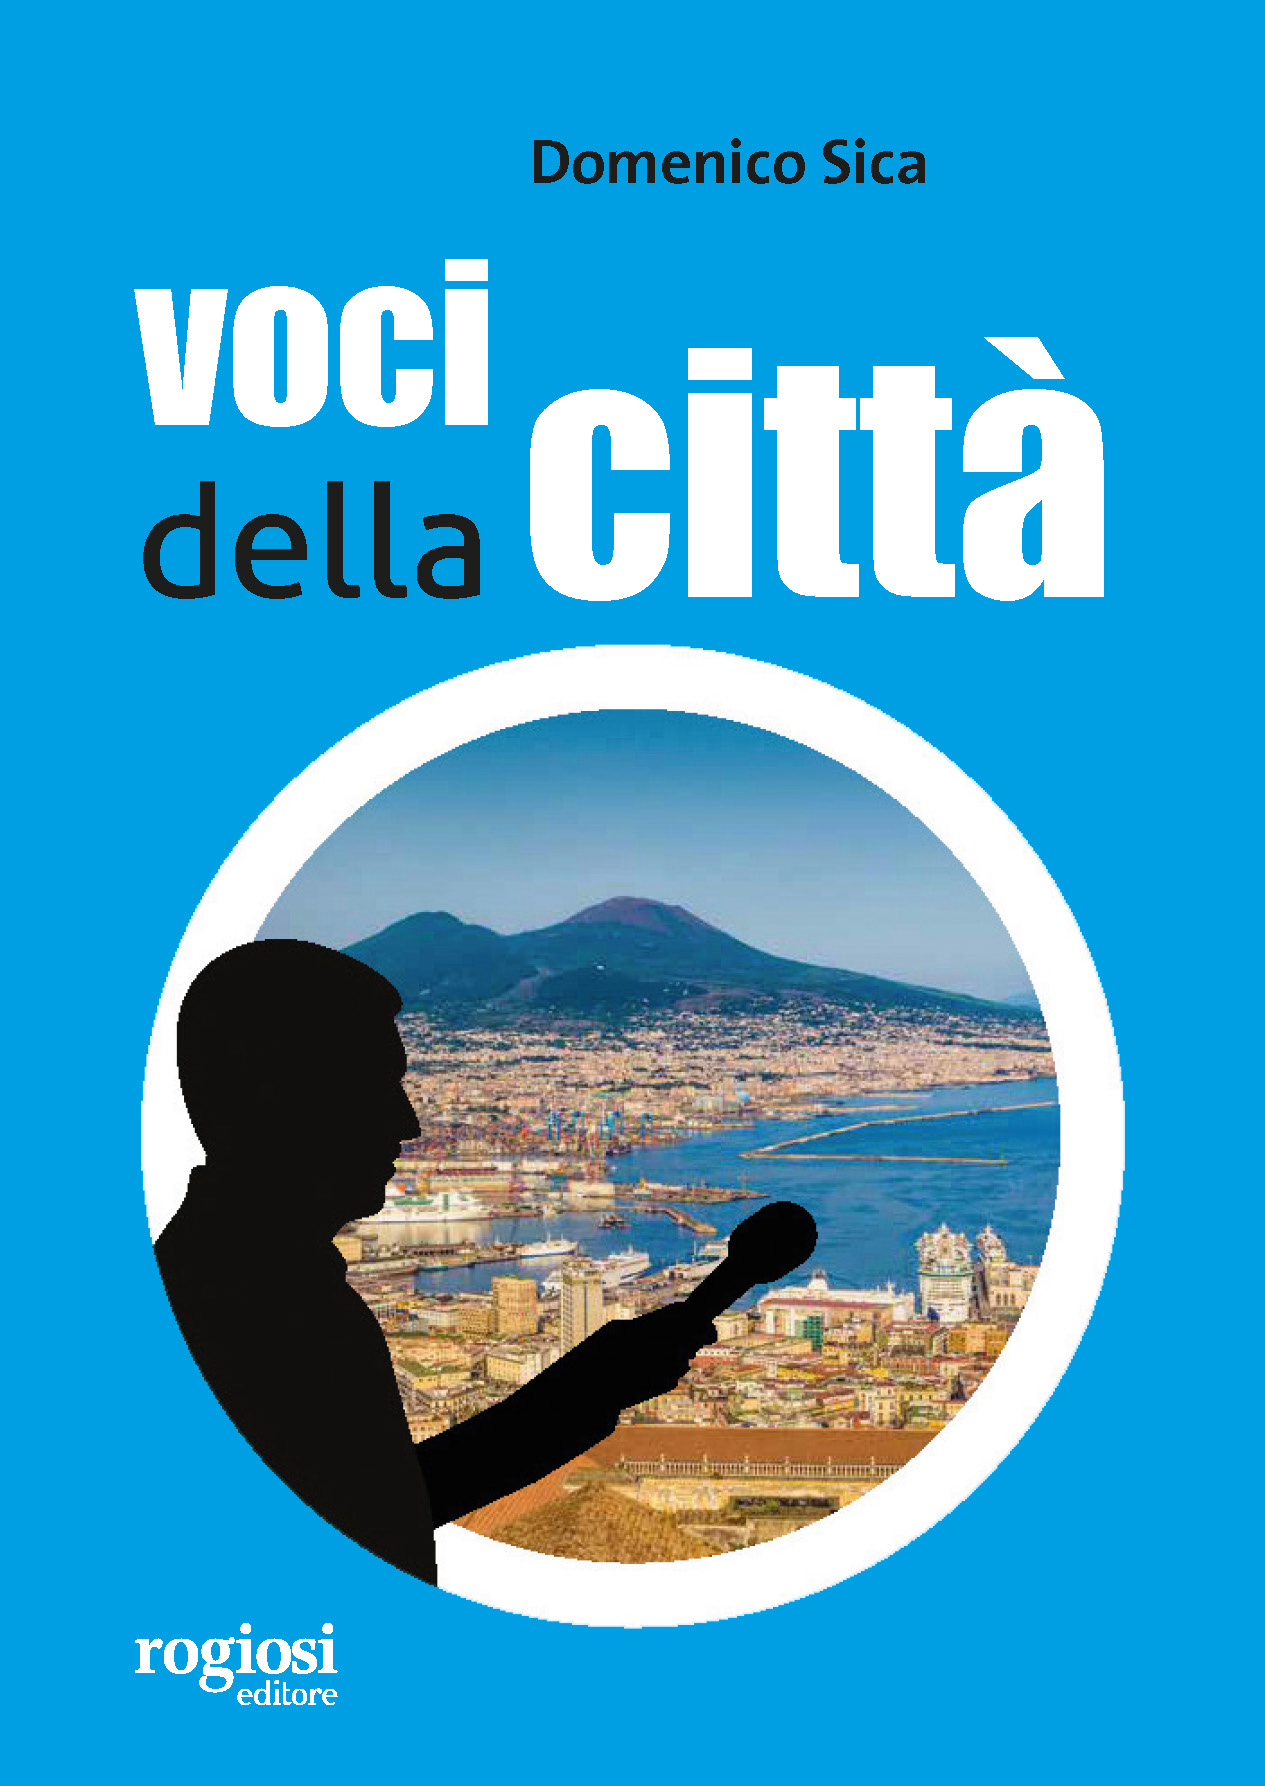 'Voci della città' il libro di Domenico Sica con la prefazione del direttore Antonio Sasso